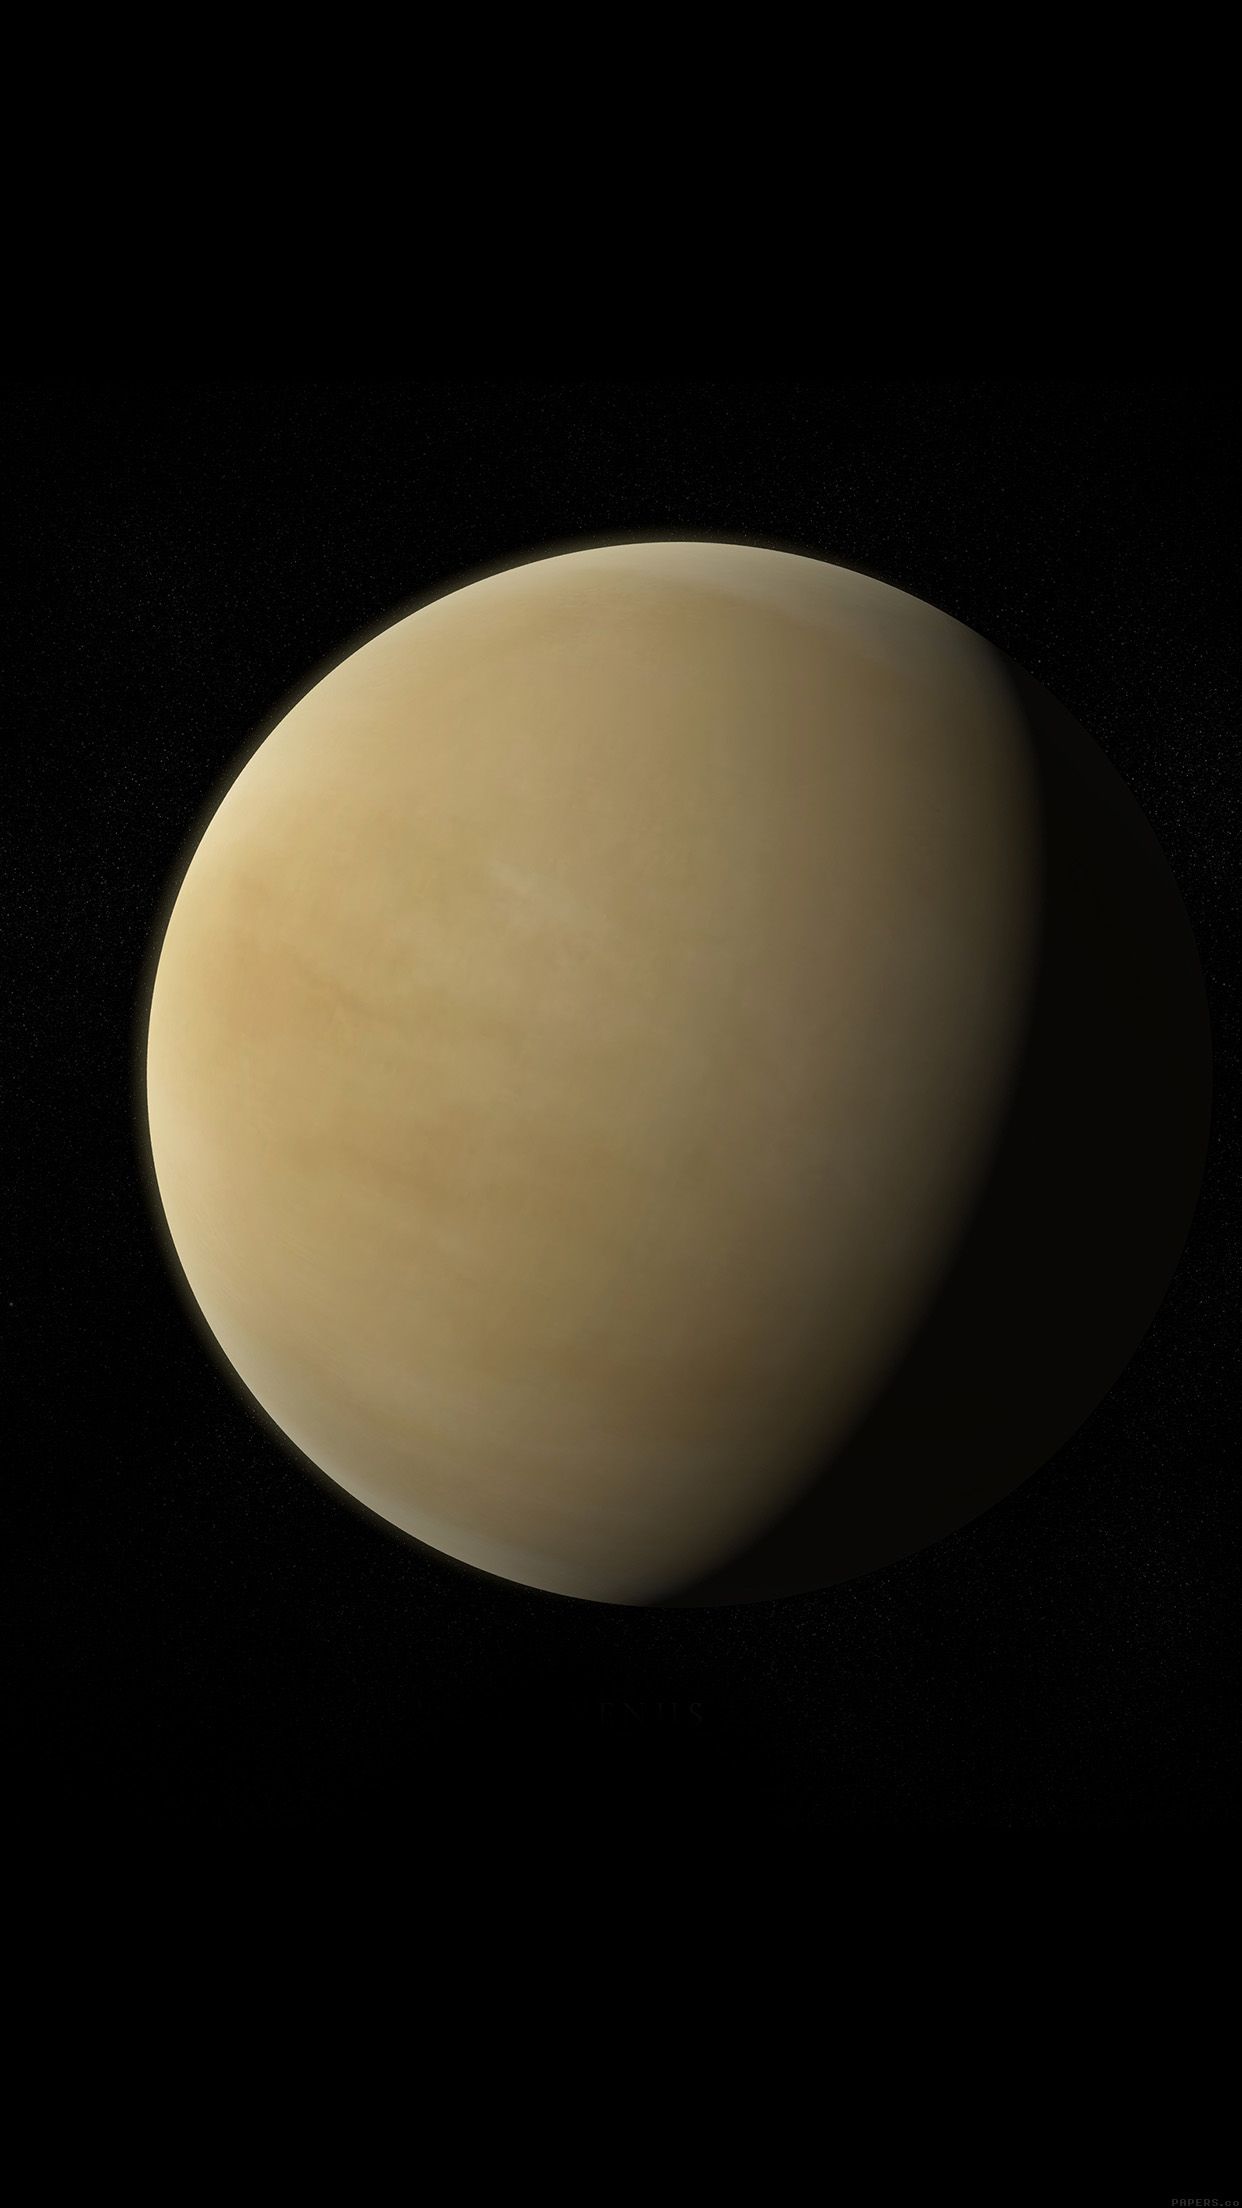 Venus space art minimal nature Download Free Wallpaper for iPhone 7